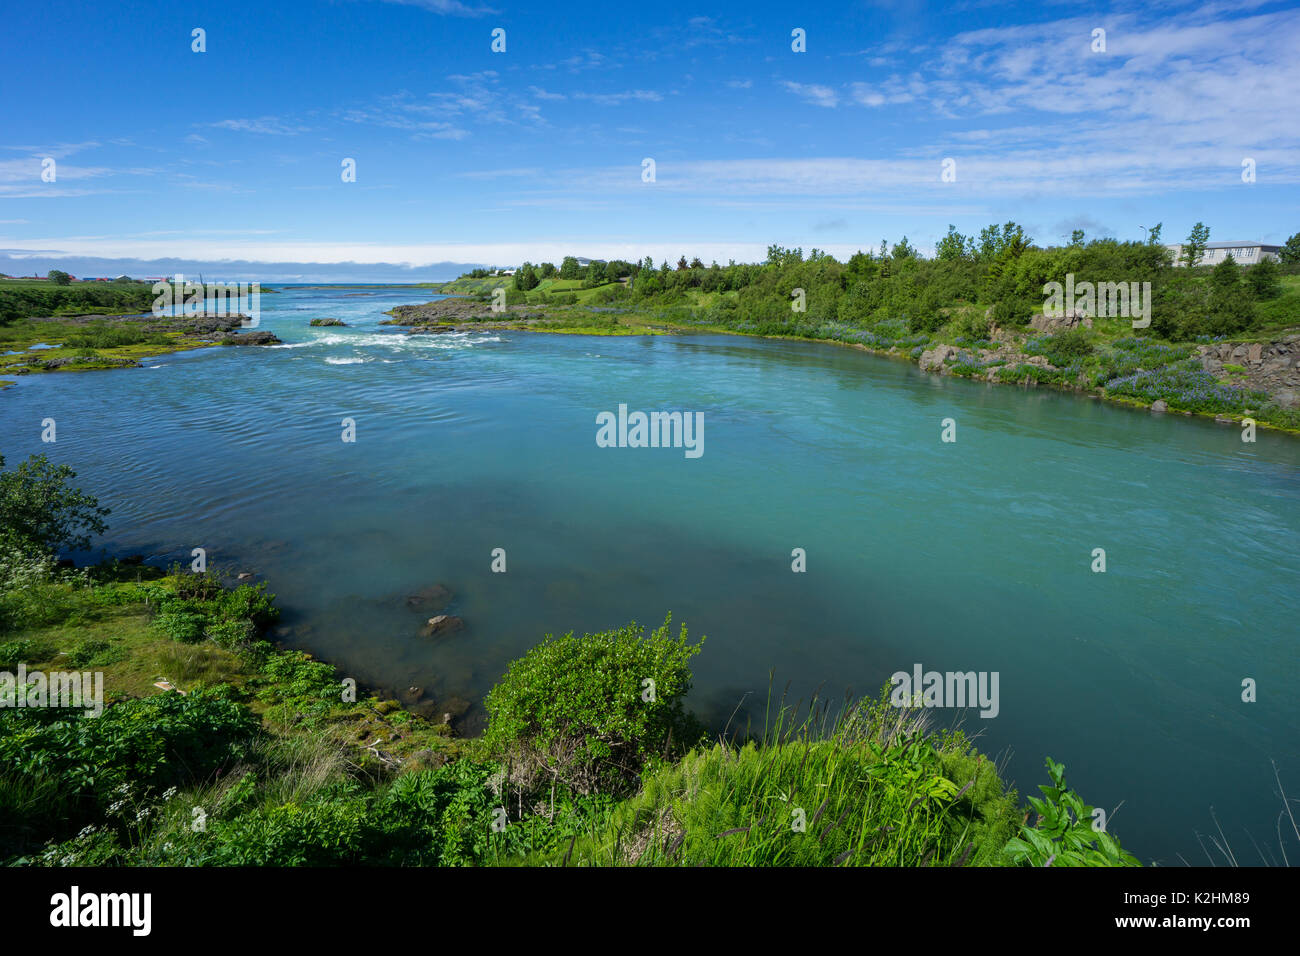 Island - türkis-grüne Wasser des Flusses zwischen grünen Pflanzen in den Ozean fließt Stockfoto